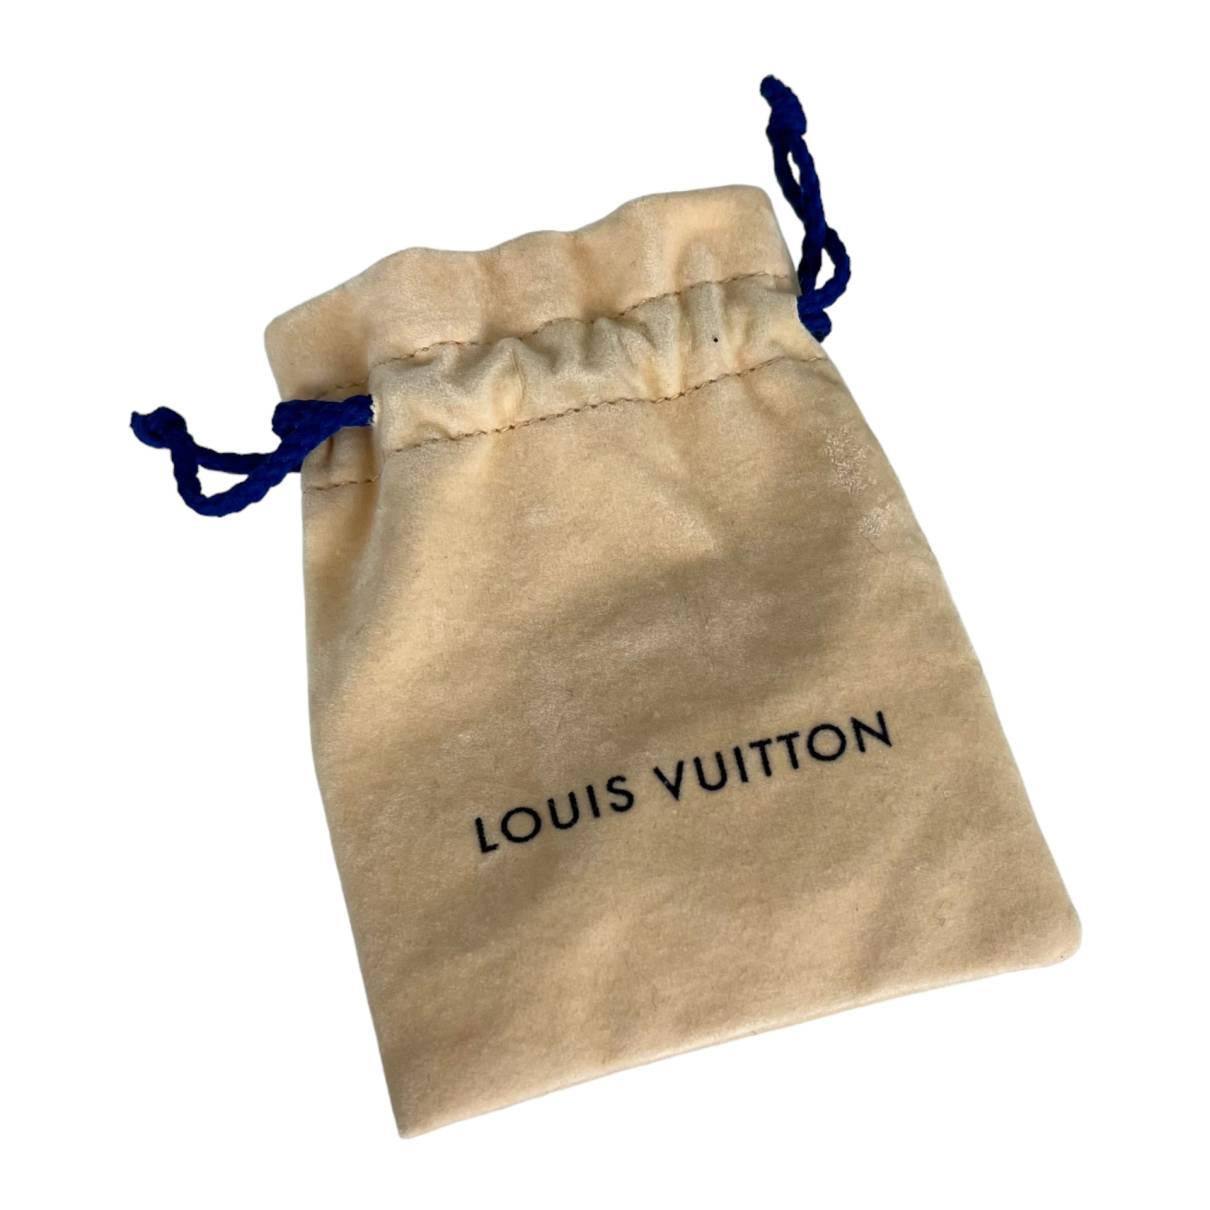 Louis Vuitton Ringe aus Vergoldet - Gold - Größe 50 - 19012443